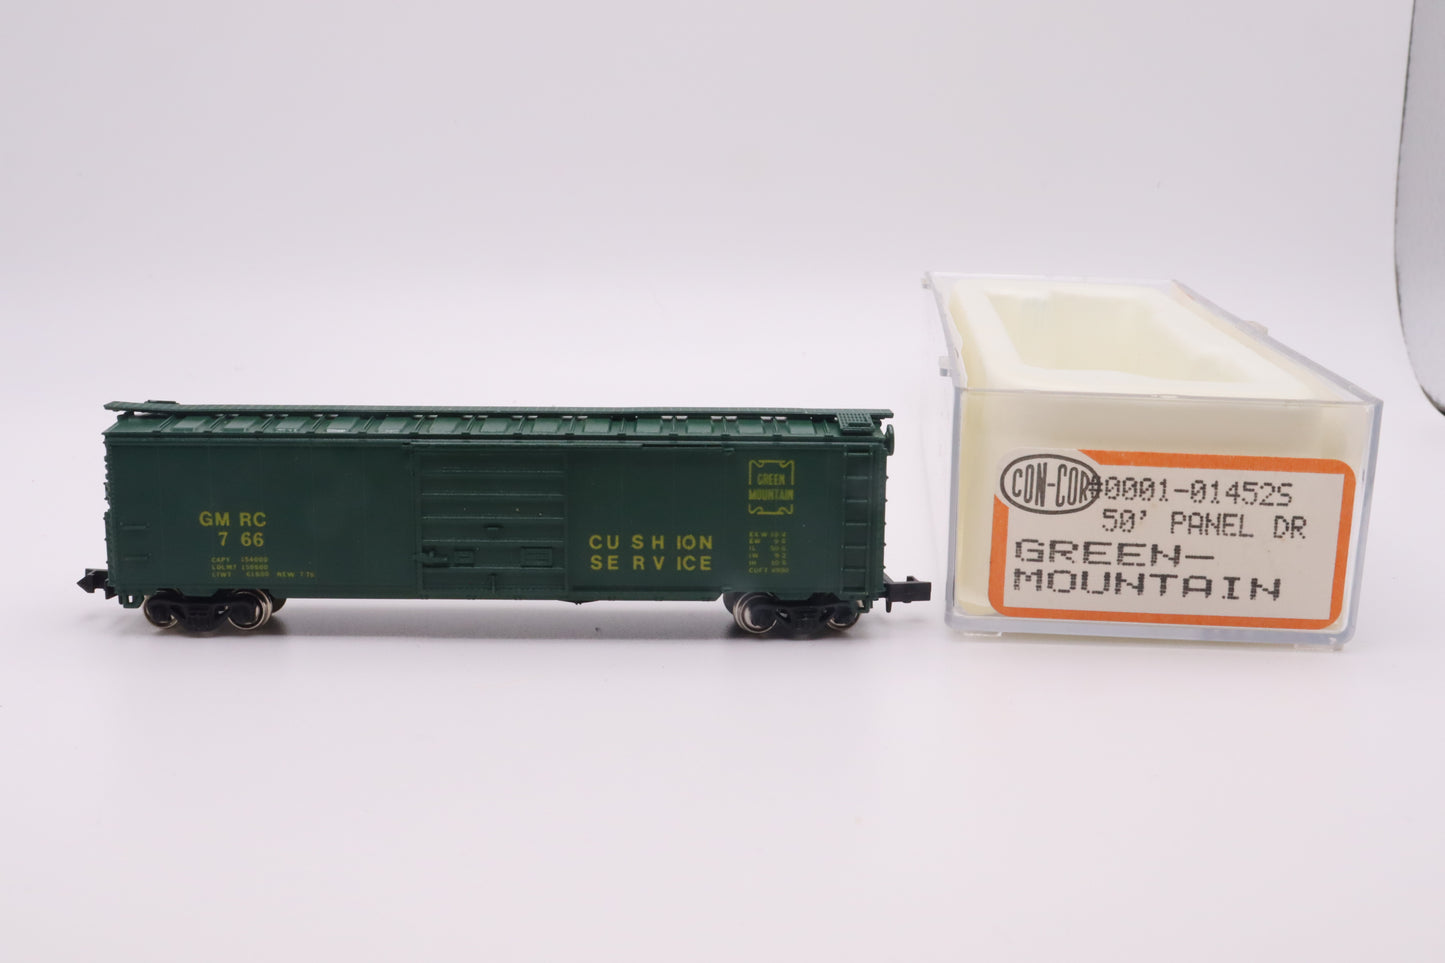 CC-1-01452S - 50' Panel Door Boxcar - Green-Mountain - GMRC-766